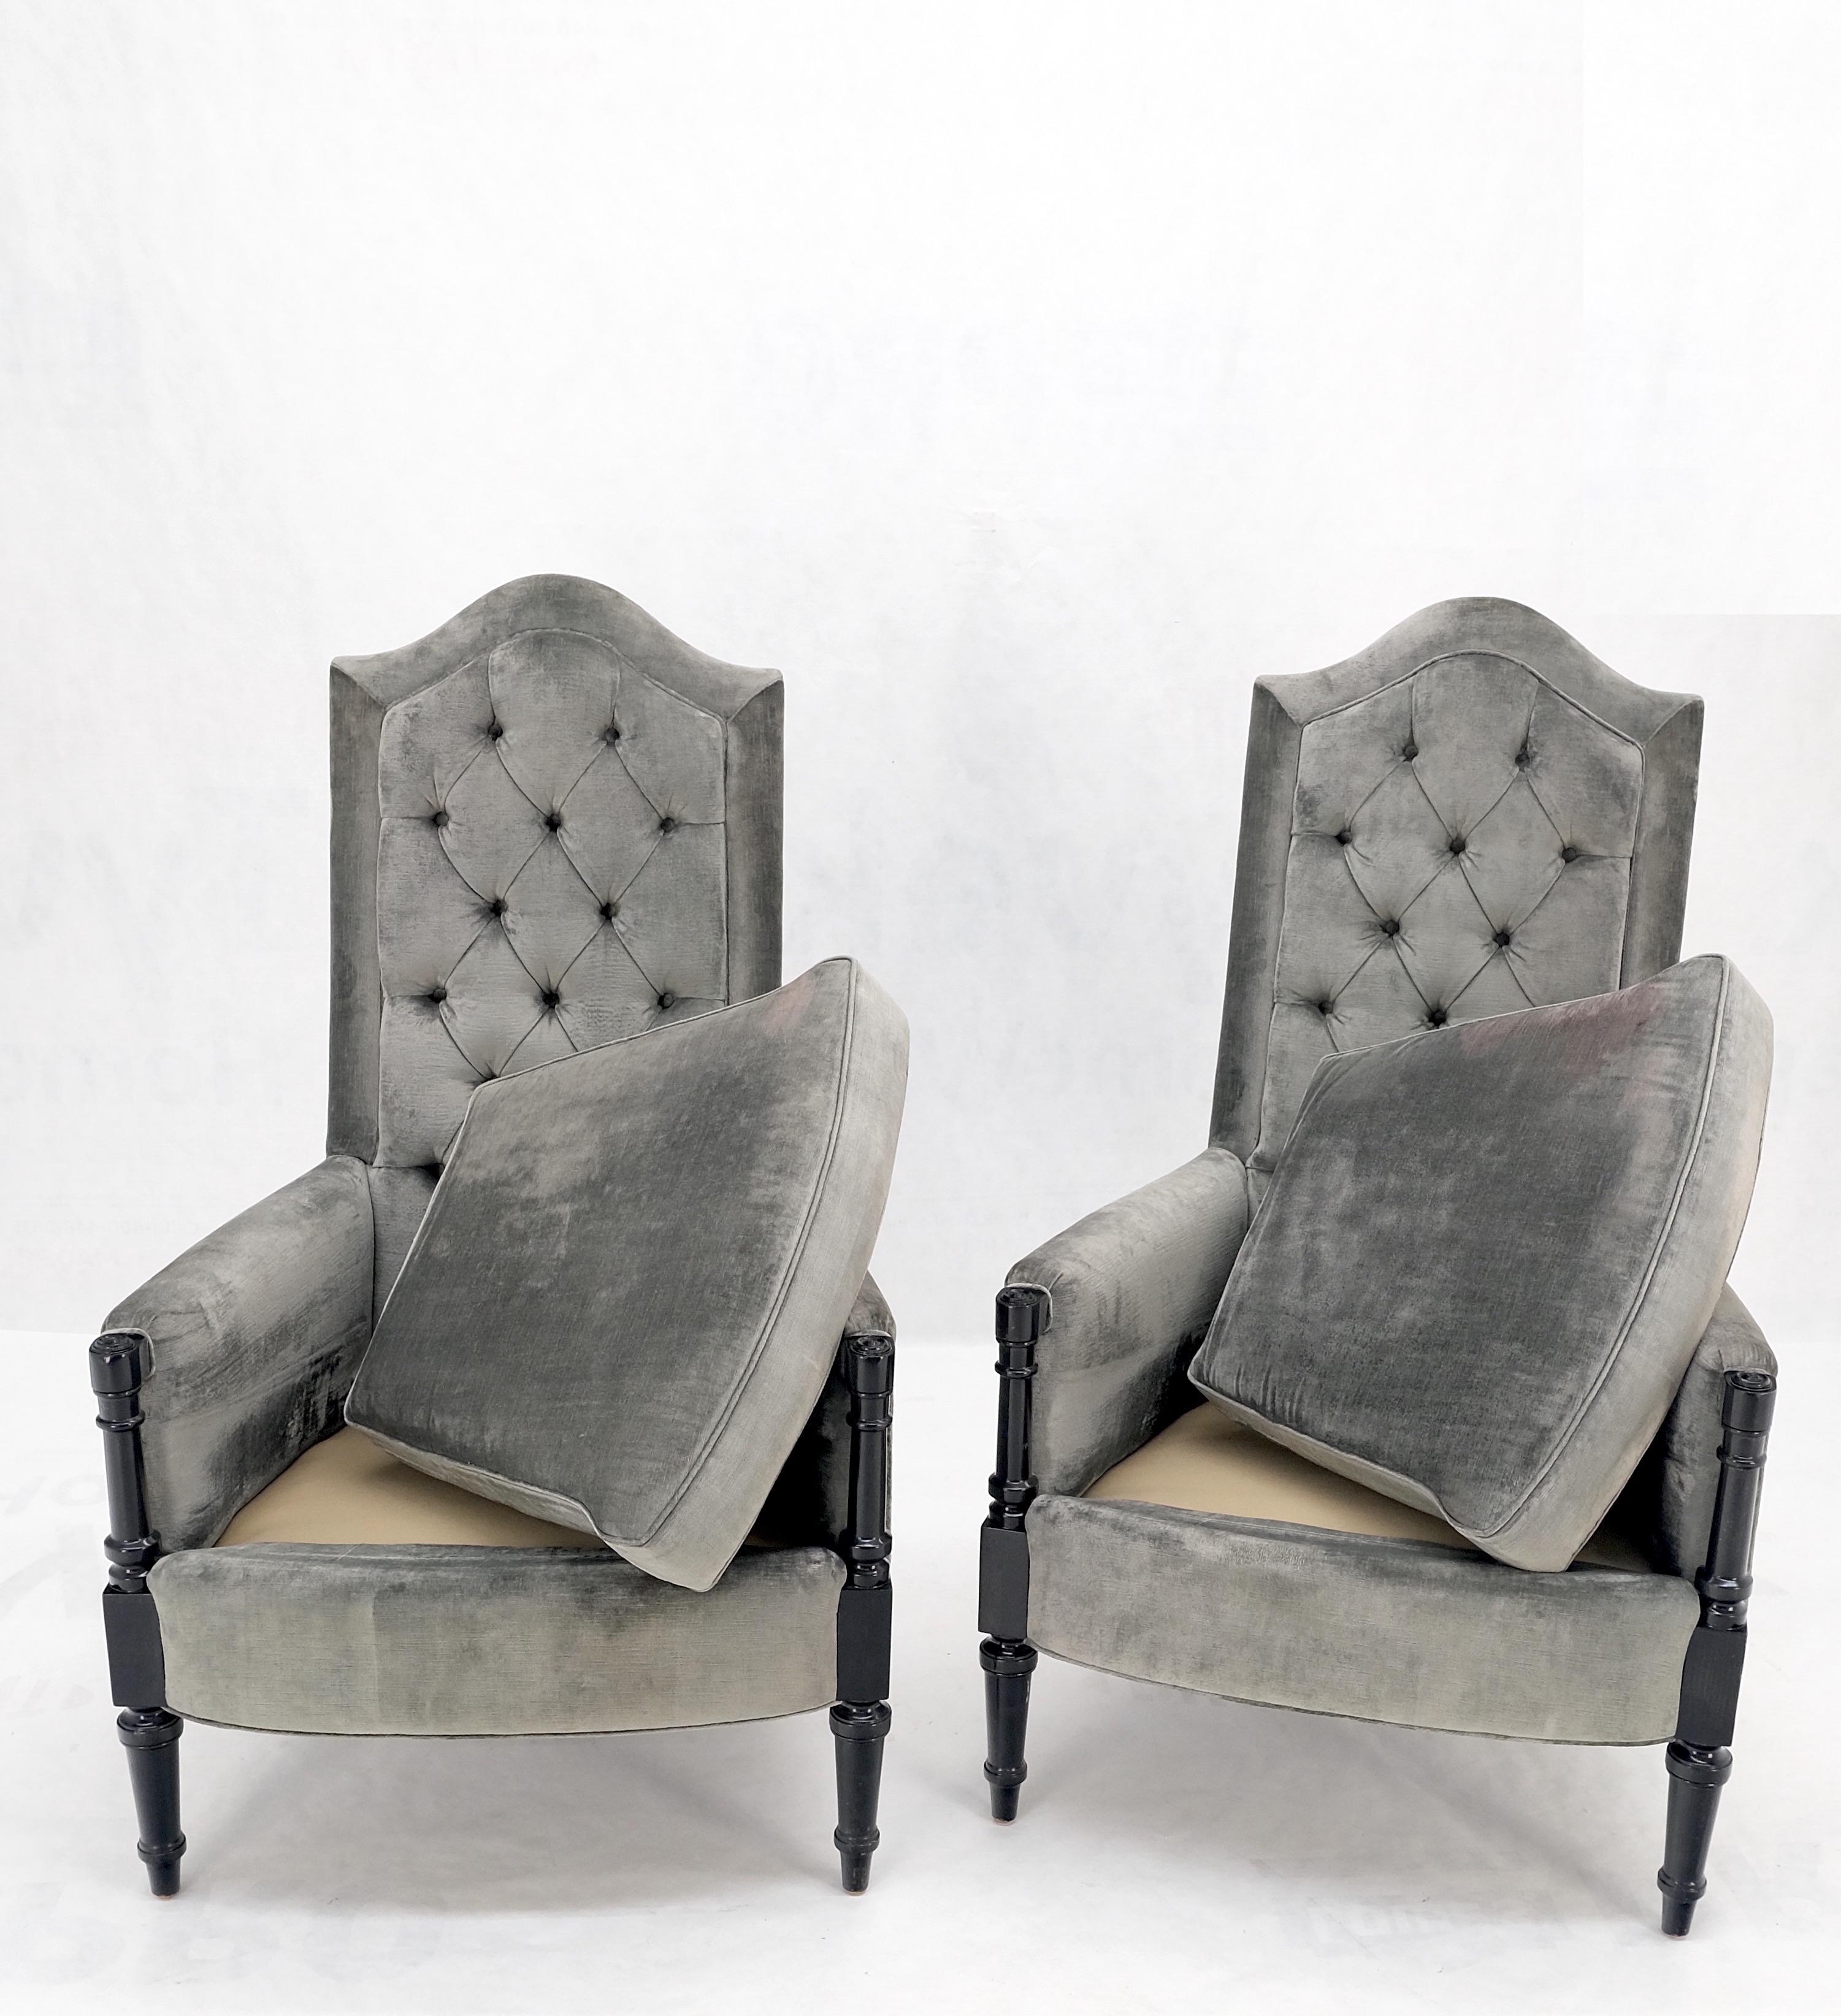 Paire de fauteuils à dossier touffeté en laque noire. Fauteuils décoratifs trônes.
Superbe qualité. Légère décoloration de la sellerie comme indiqué sur la photo.